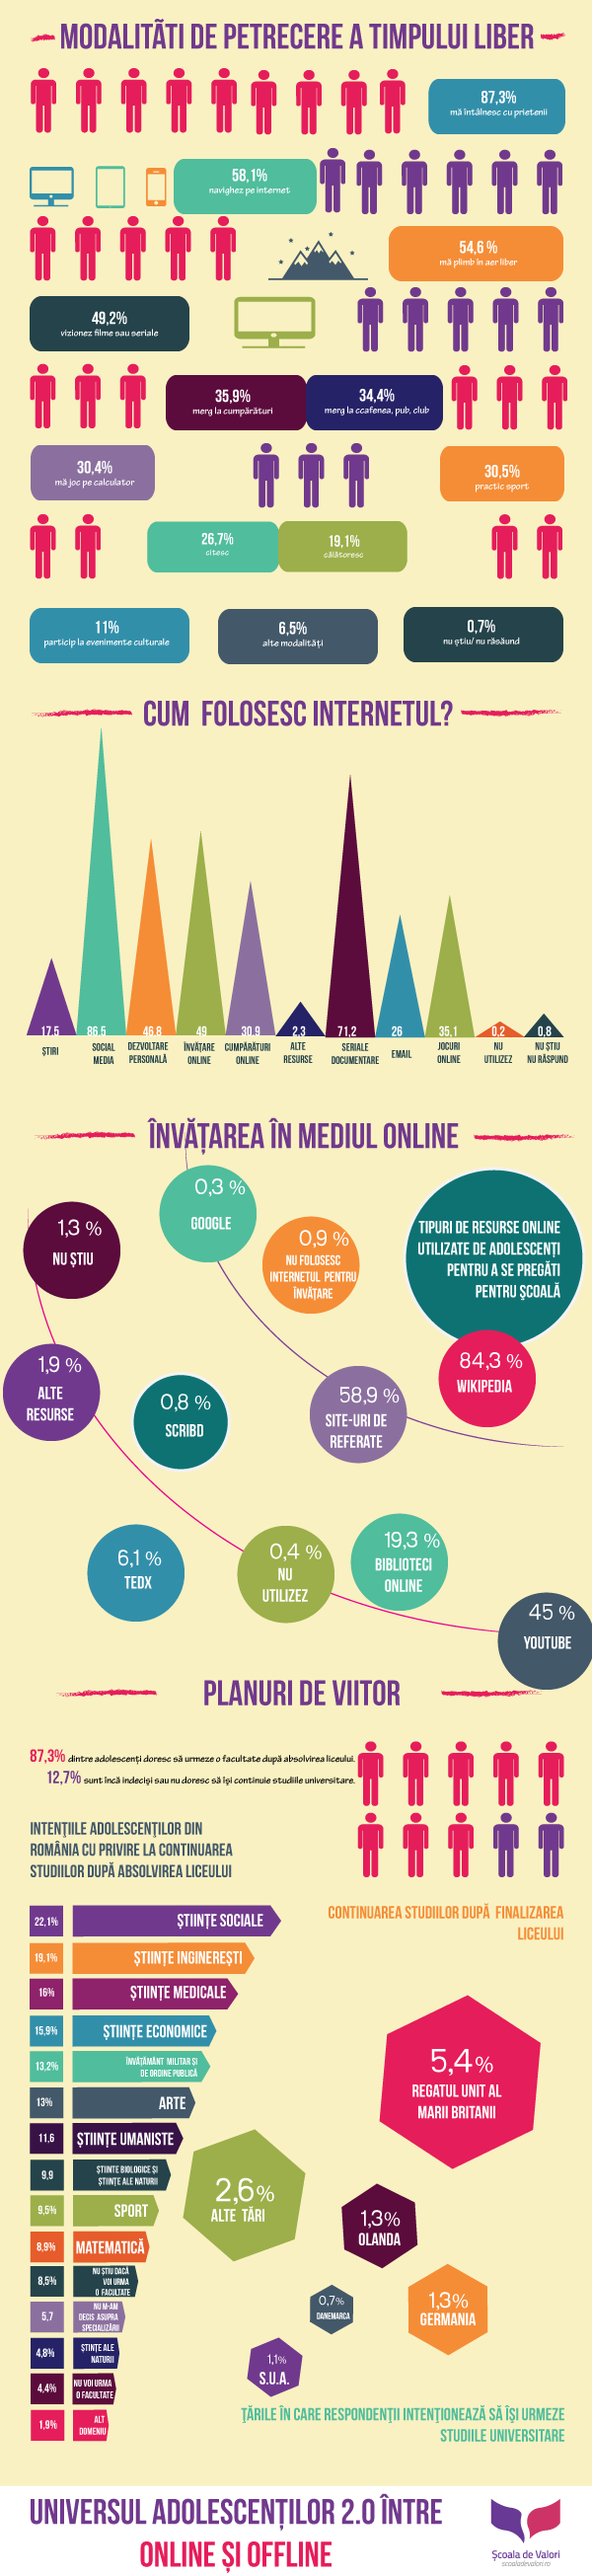 Studiu: Universul adolescenţilor 2.0 – între online şi offline #infographic